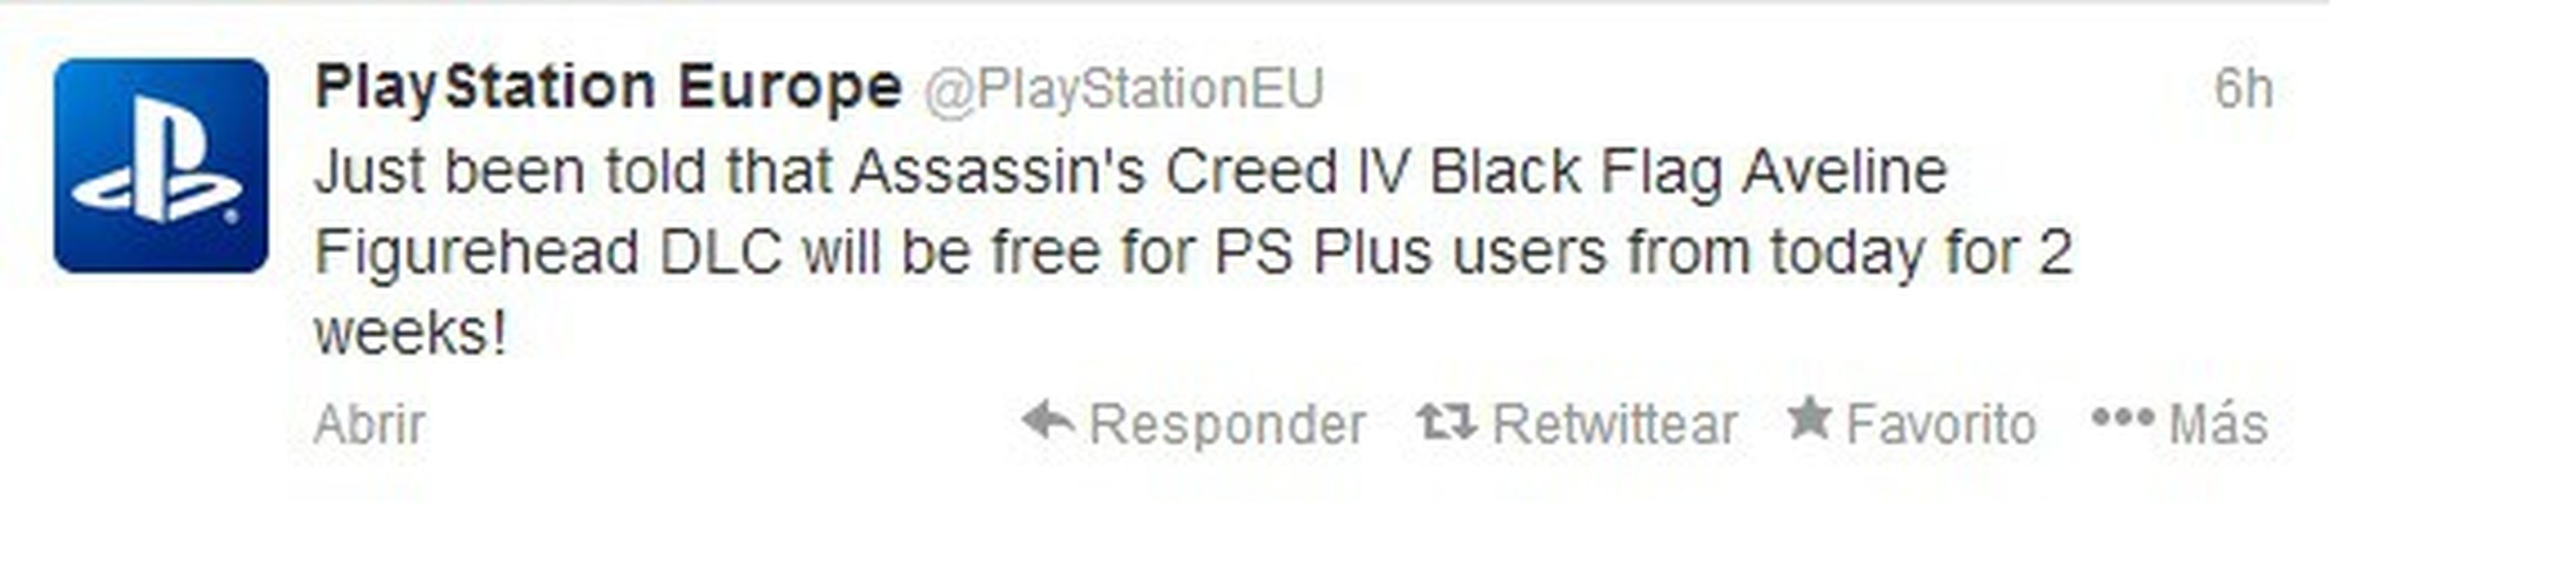 DLC de Aveline en Assassin's Creed IV gratis con PS Plus